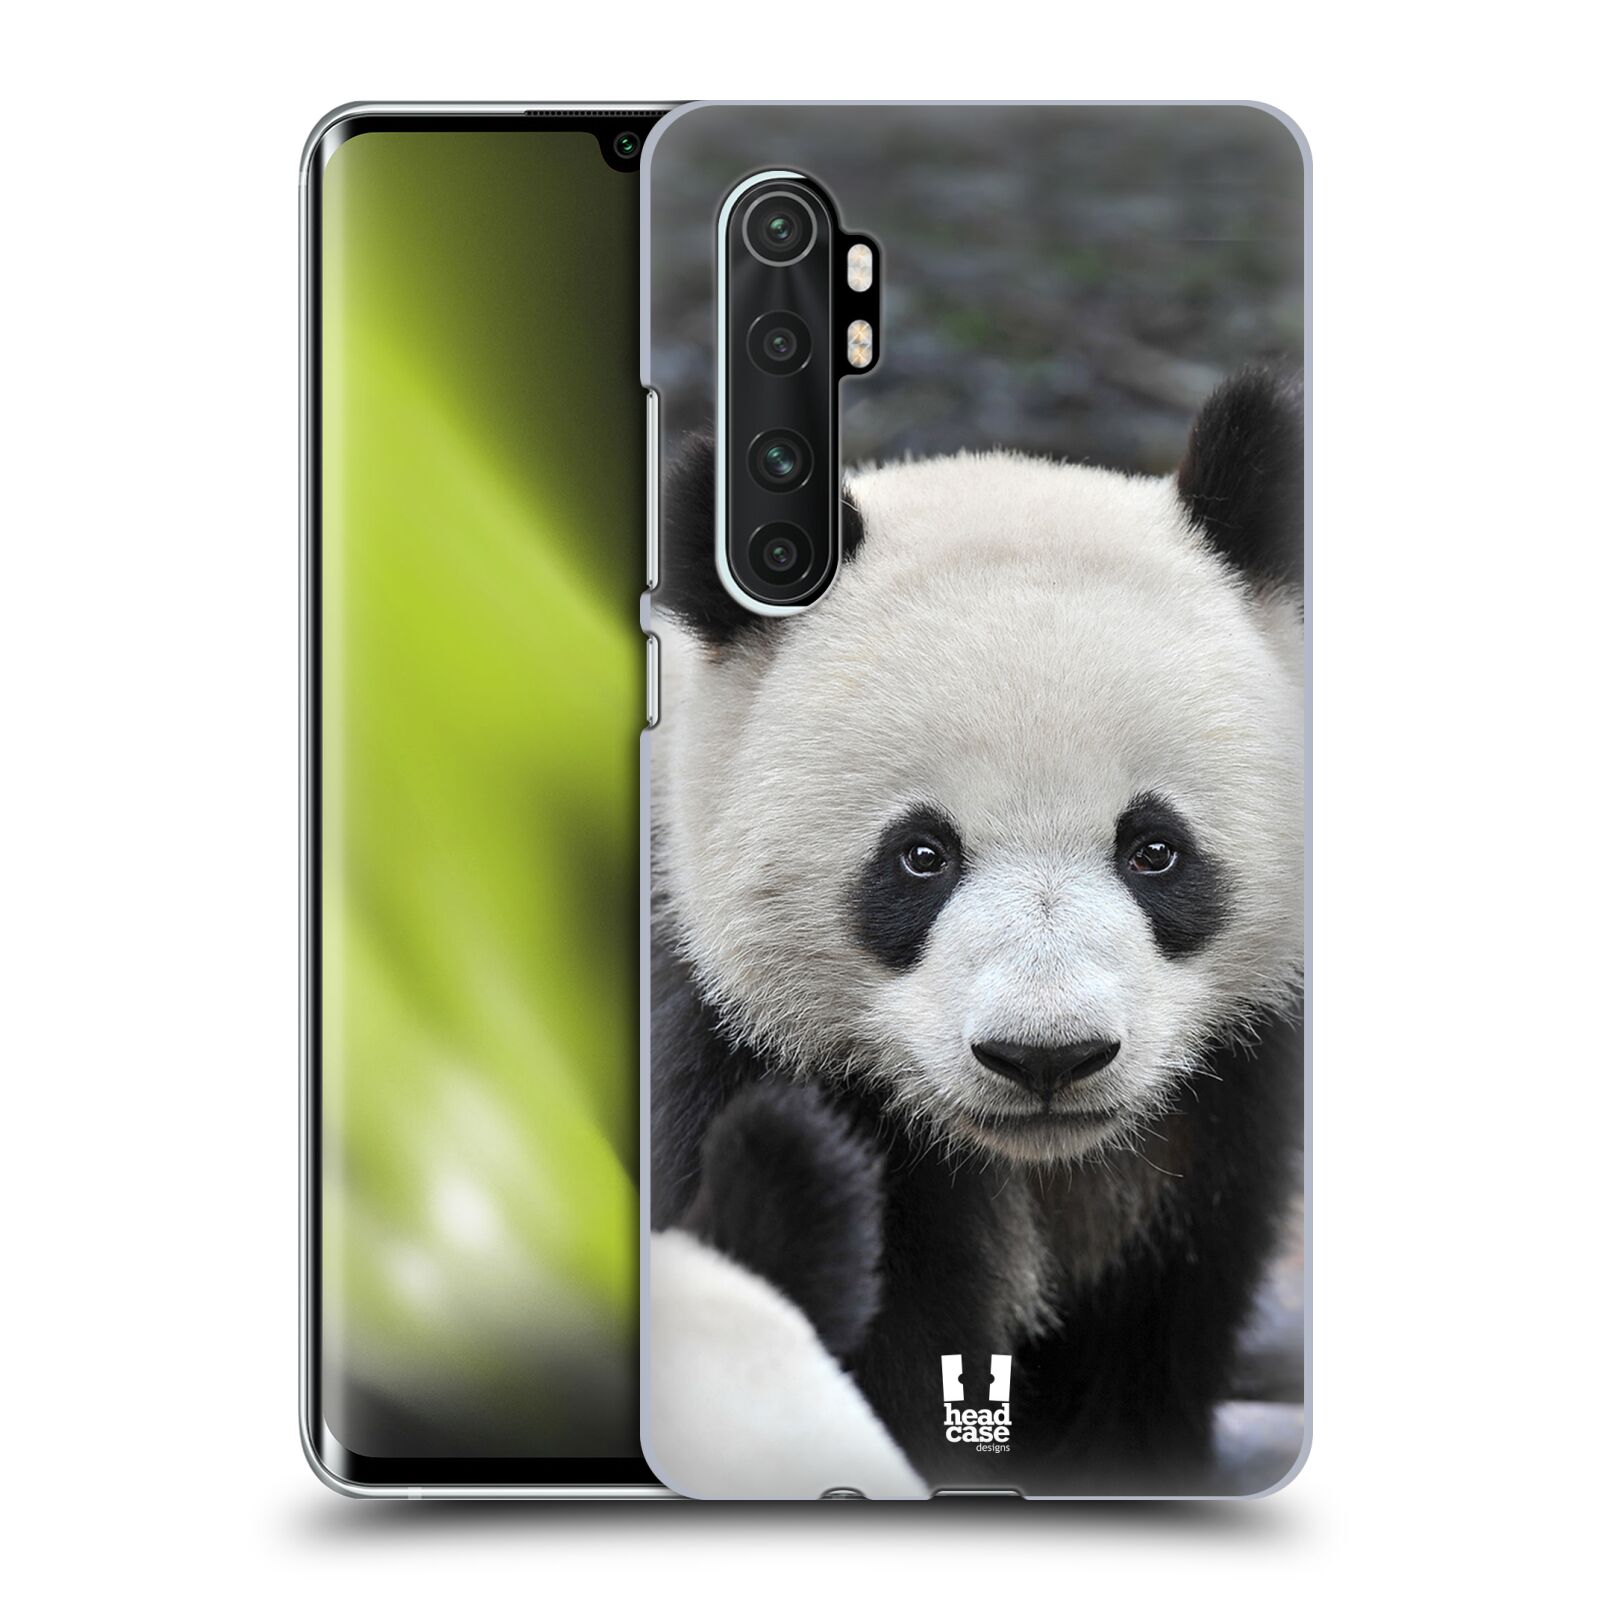 Zadní obal pro mobil Xiaomi Mi Note 10 LITE - HEAD CASE - Svět zvířat medvěd panda